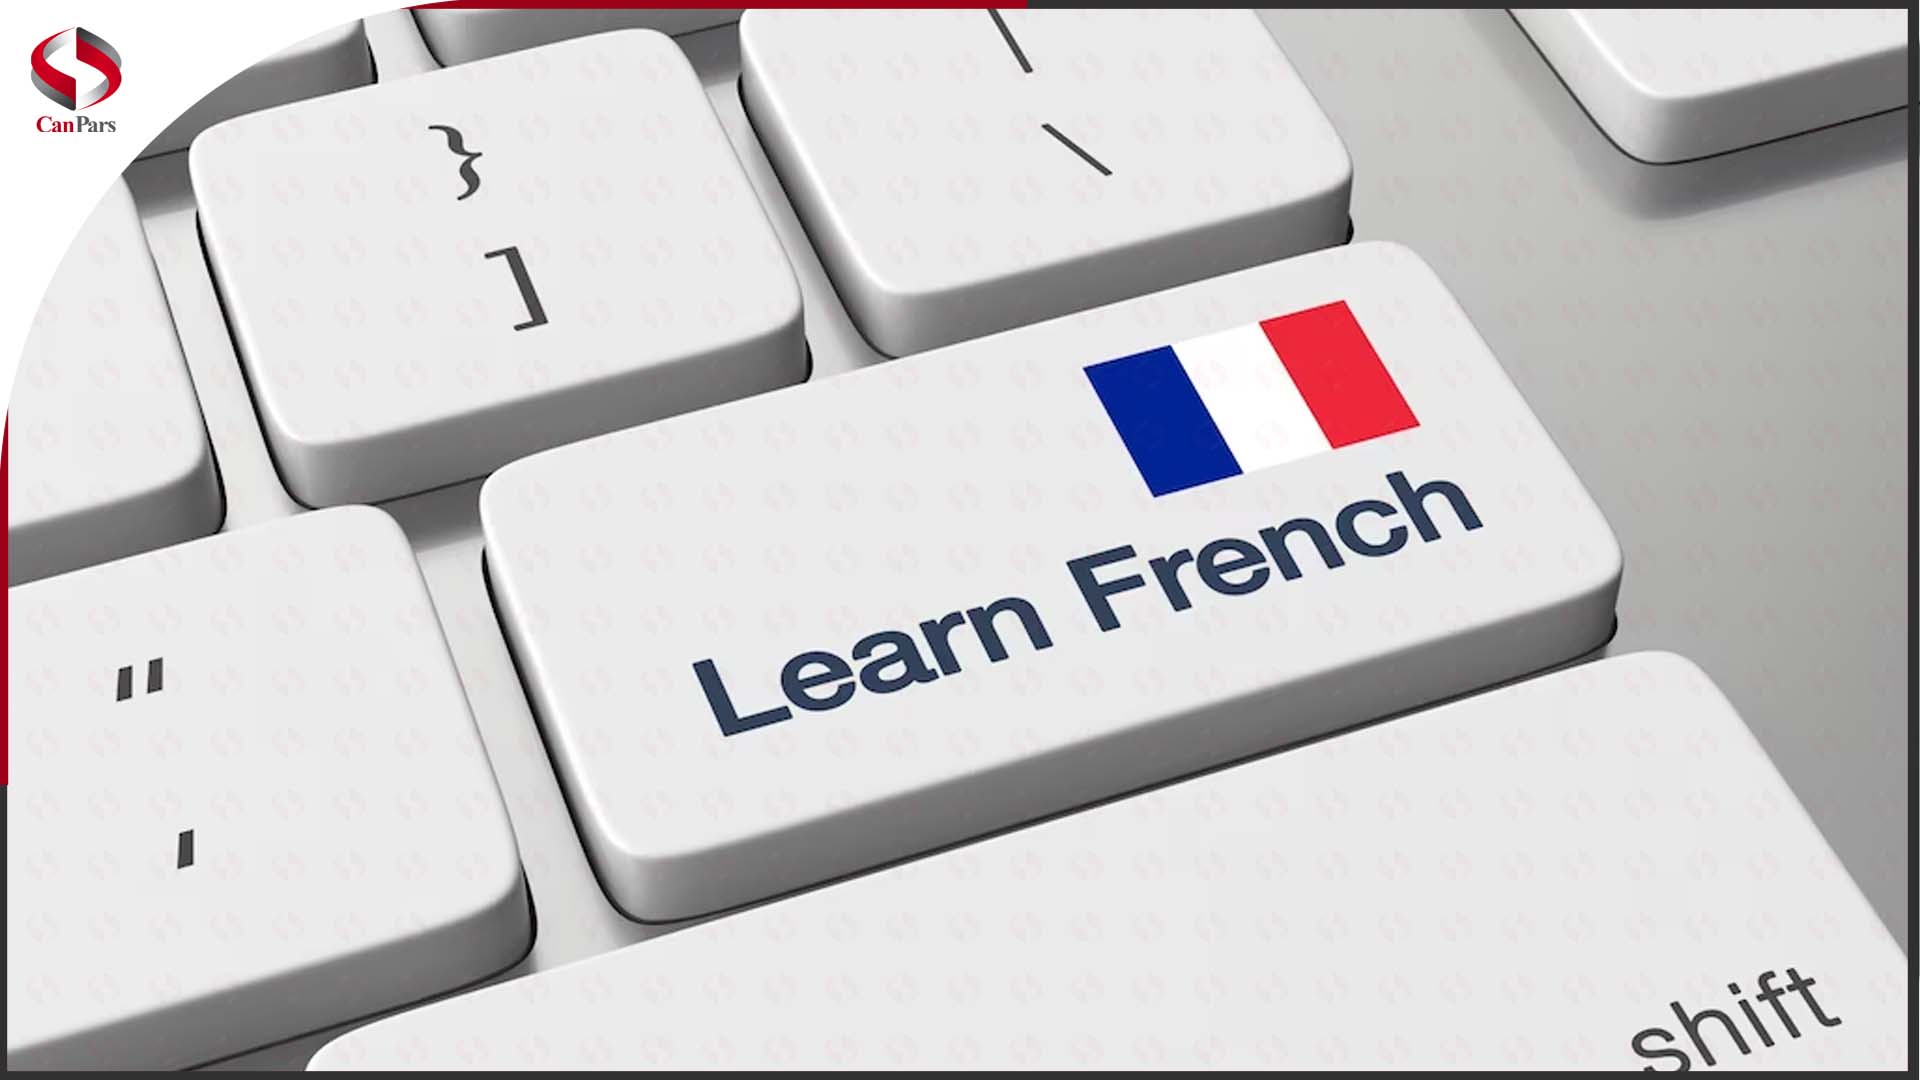 زبان فرانسه